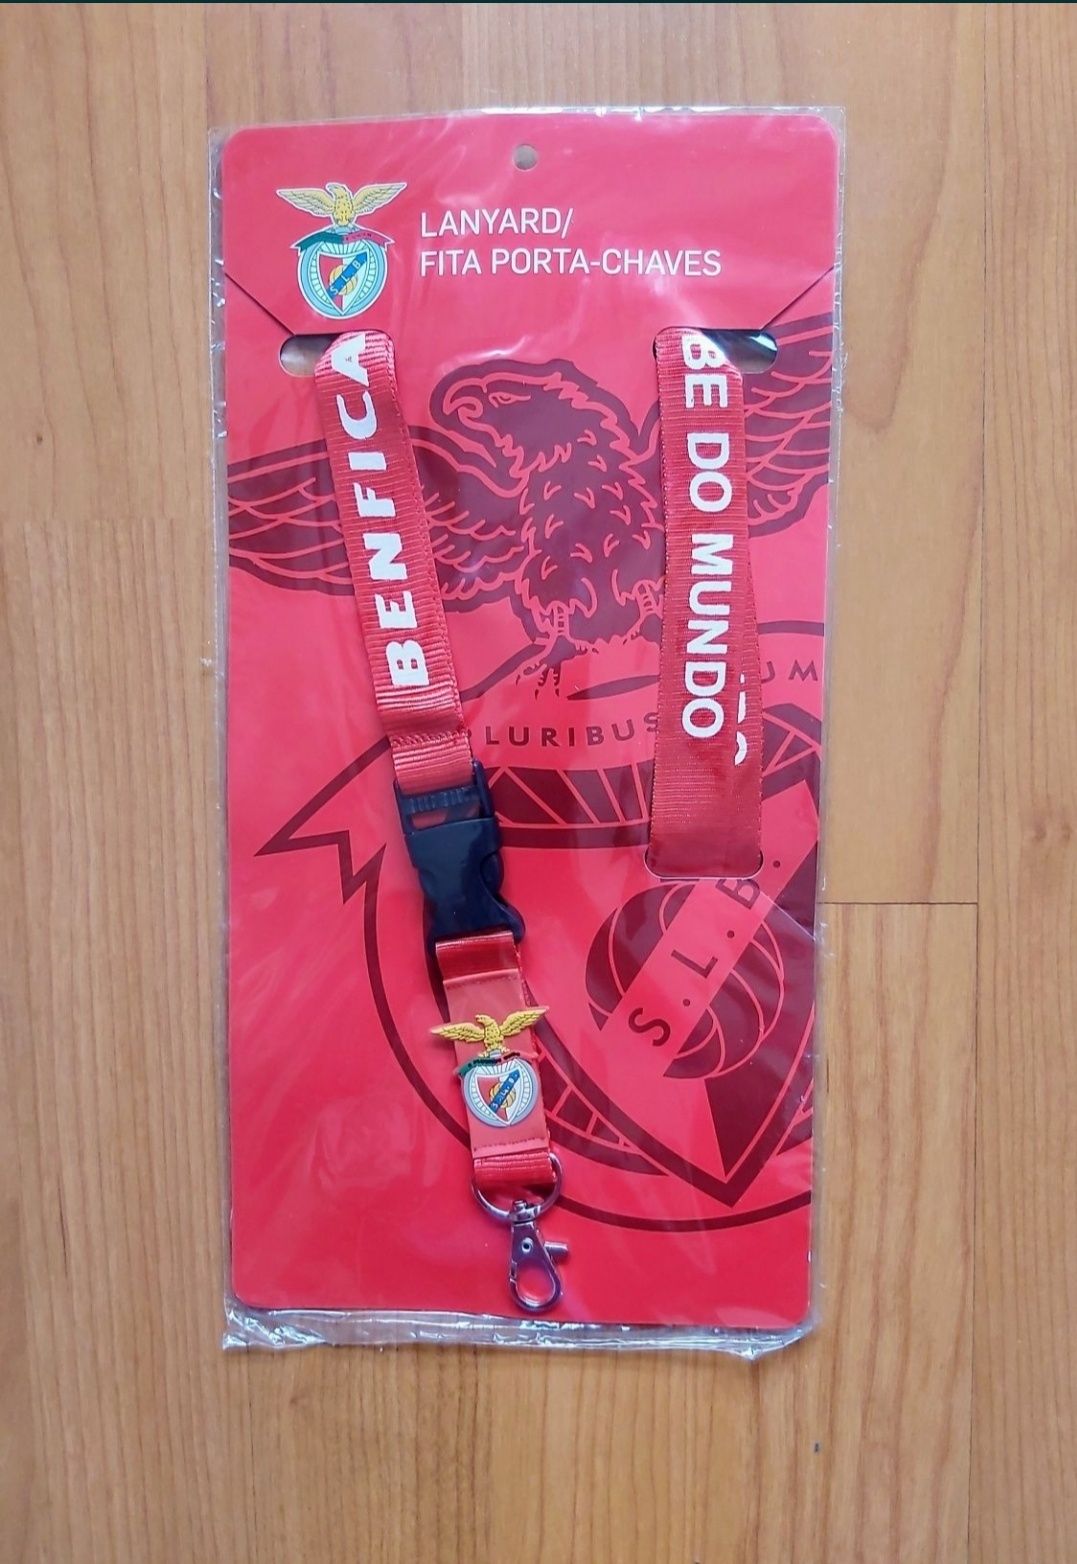 Fita Lanyard Porta Chaves SL Benfica (SLB)